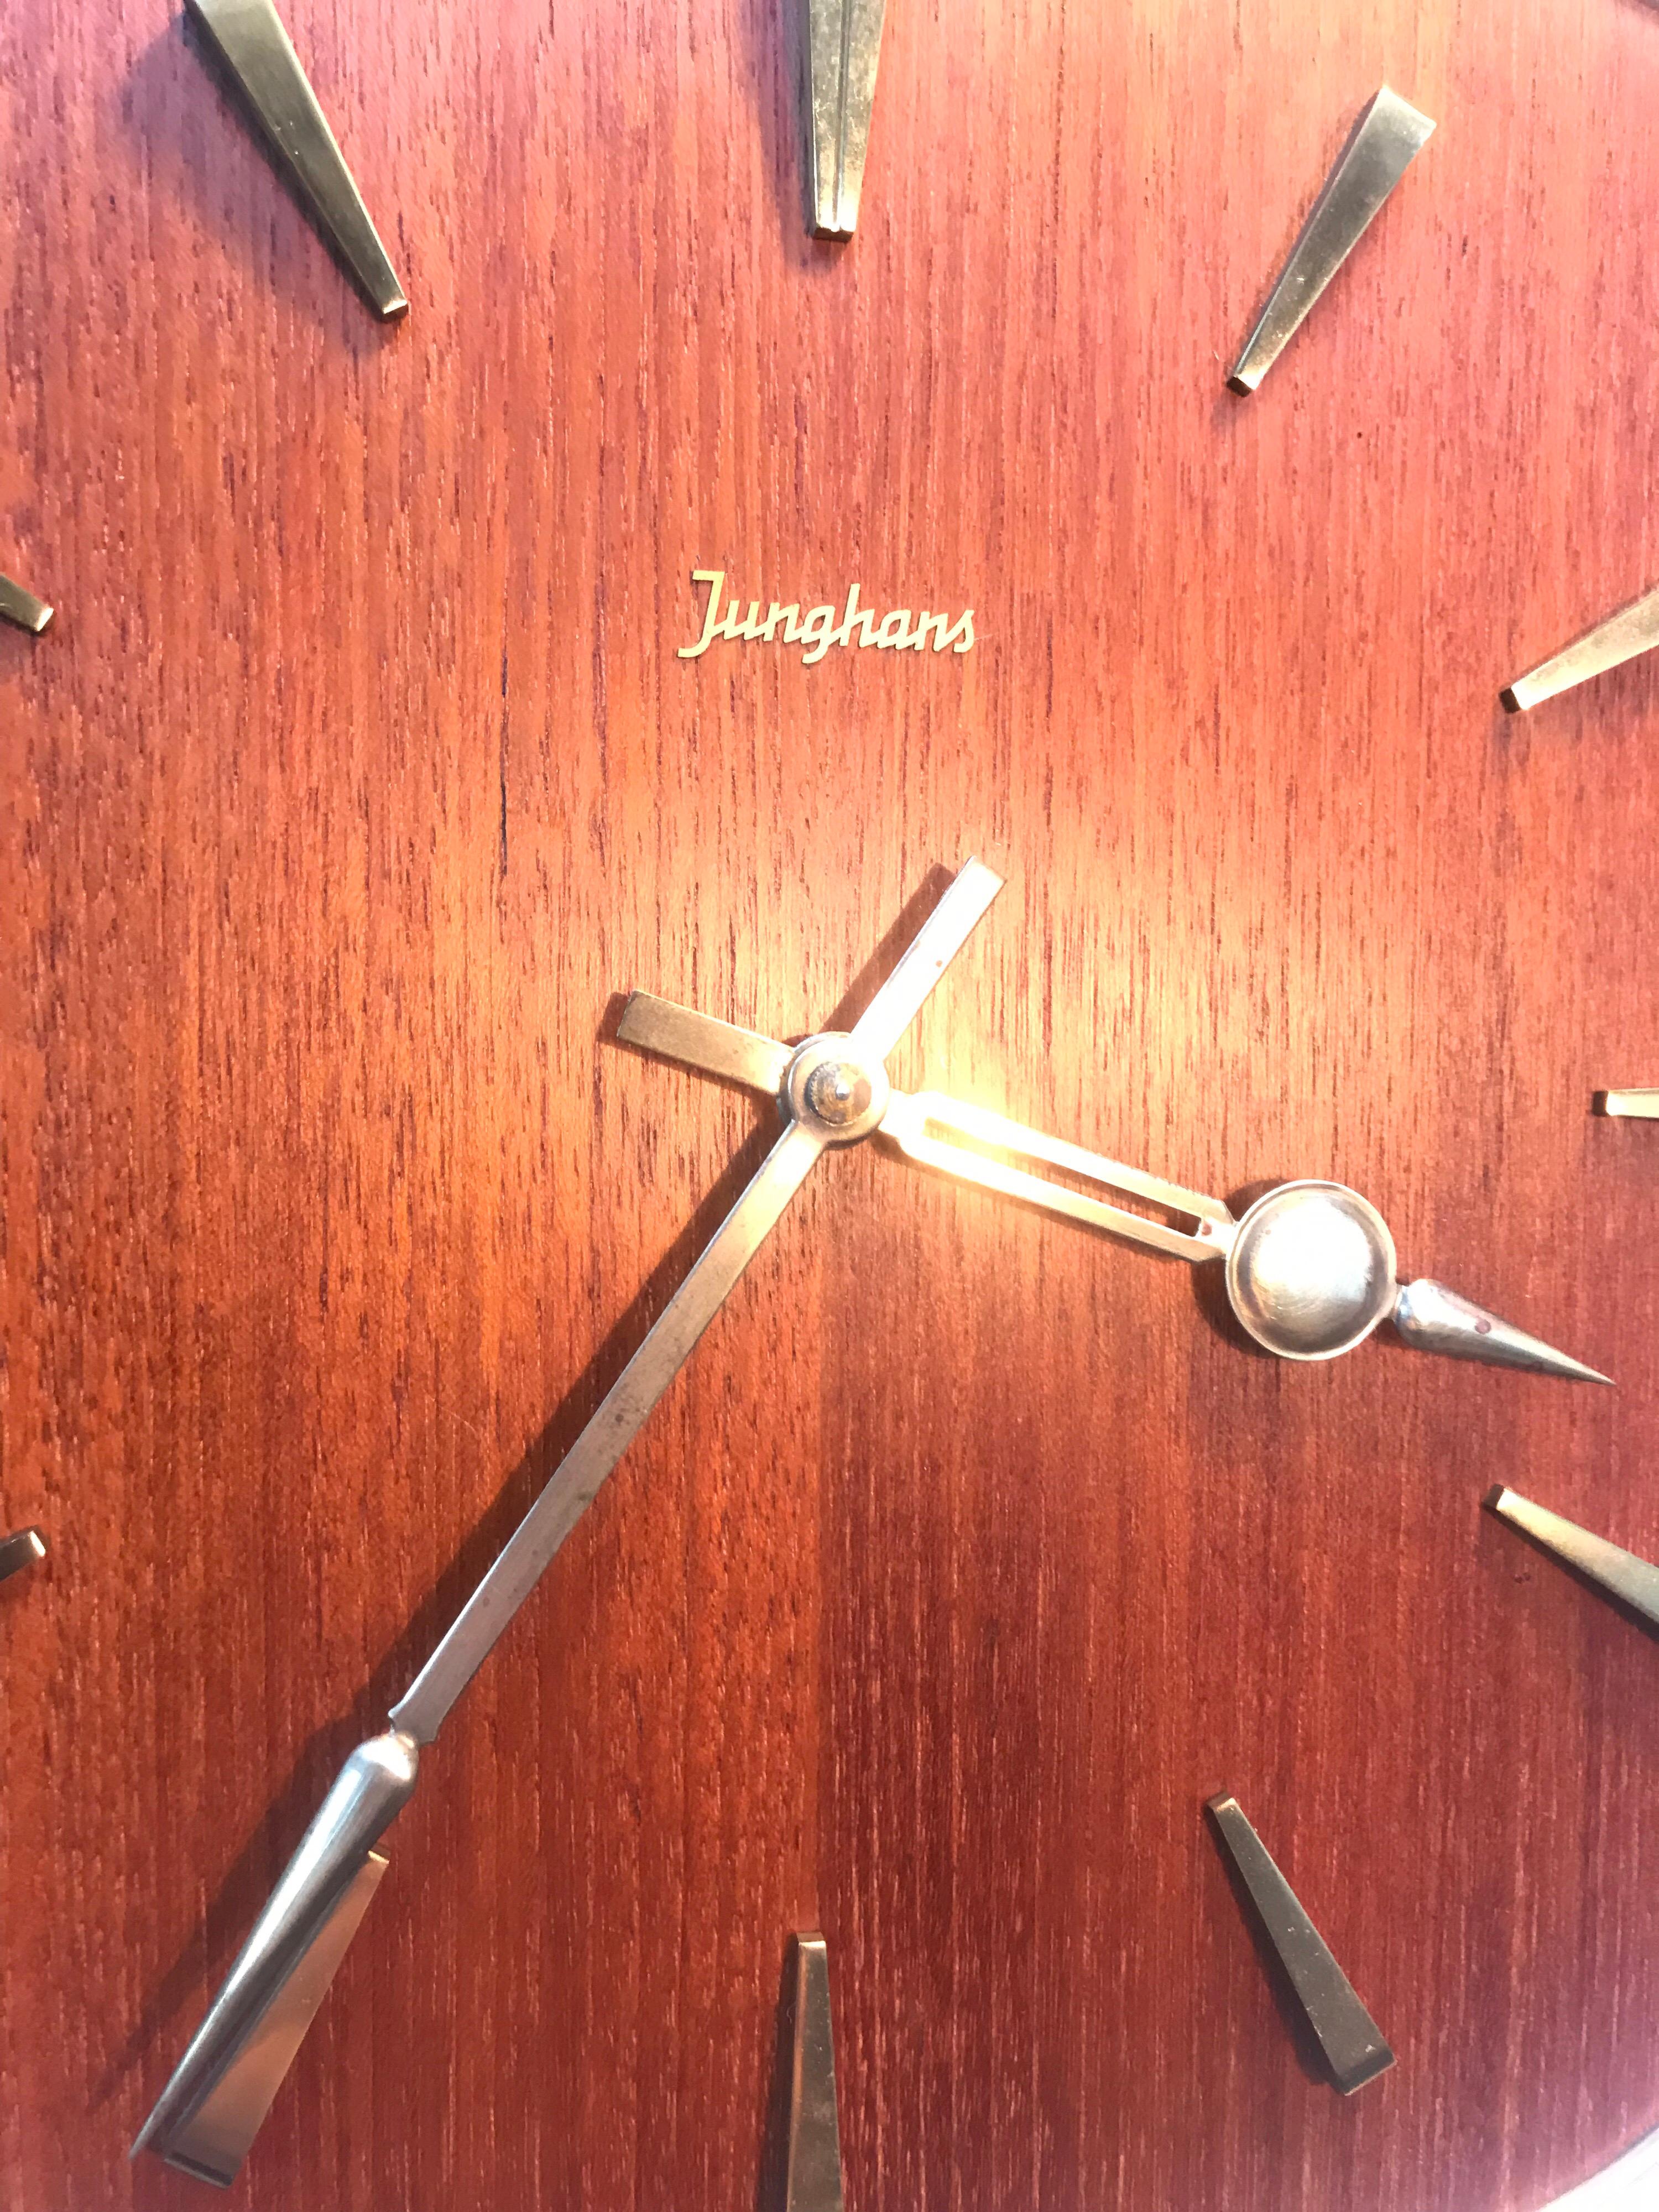 vintage pendulum wall clock